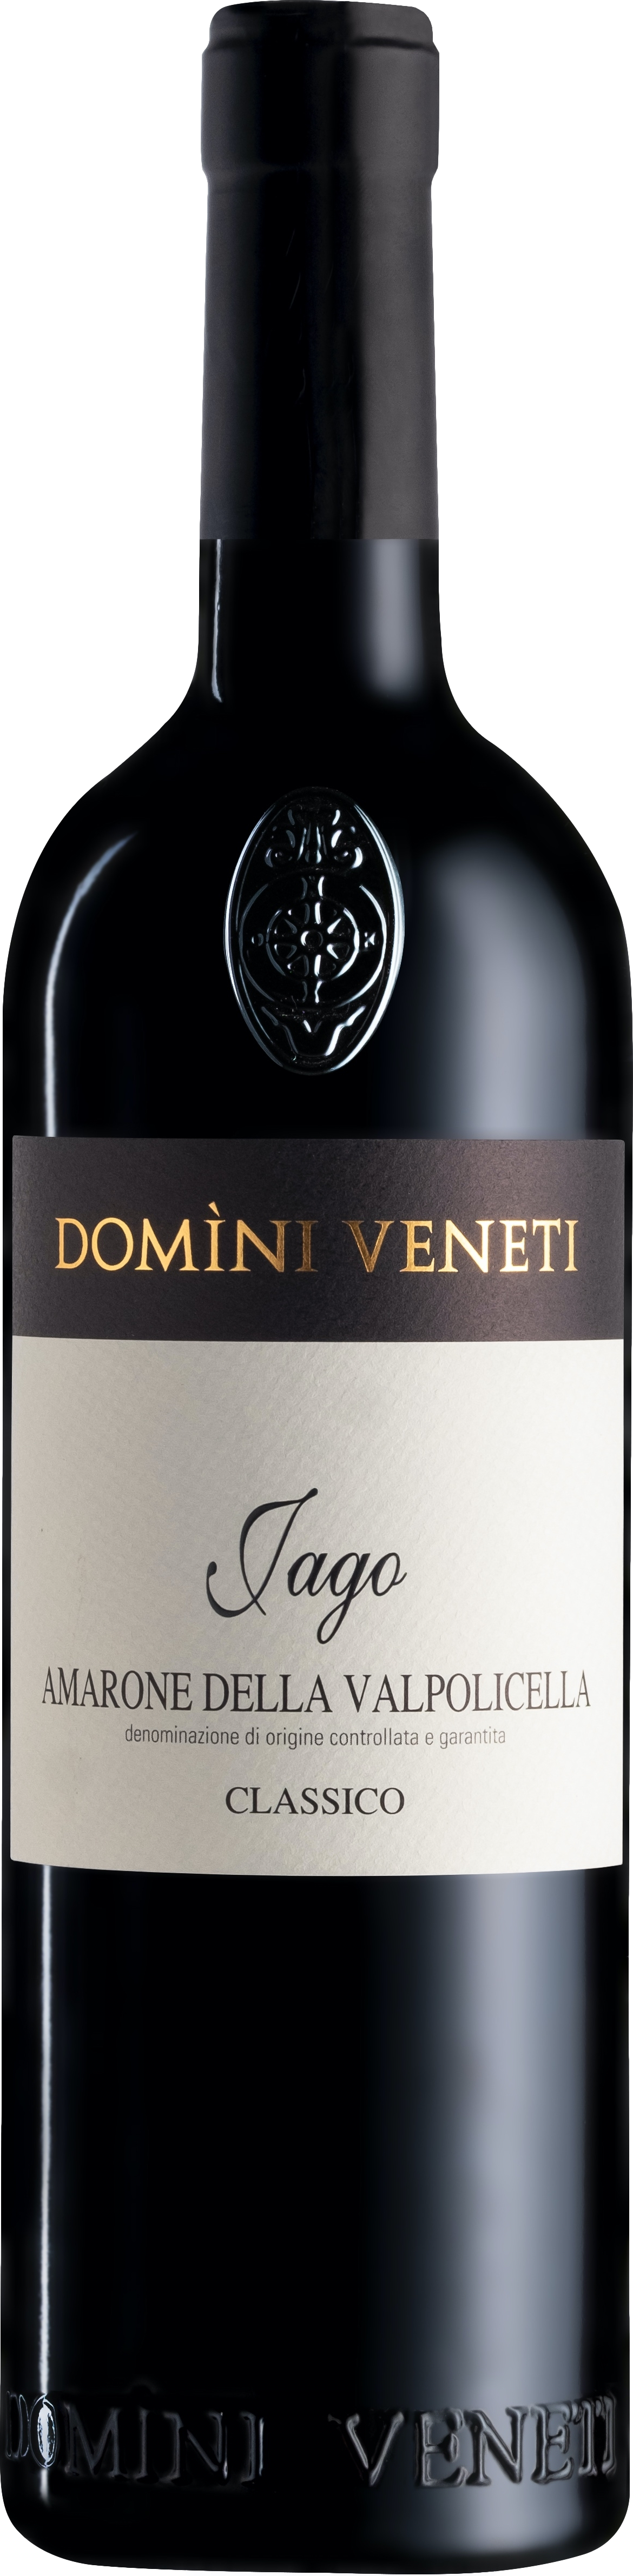 La Vigne günstig Kaufen-Domini Veneti Vigneti di Jago Amarone della Valpolicella Classico 2017. Domini Veneti Vigneti di Jago Amarone della Valpolicella Classico 2017 . 